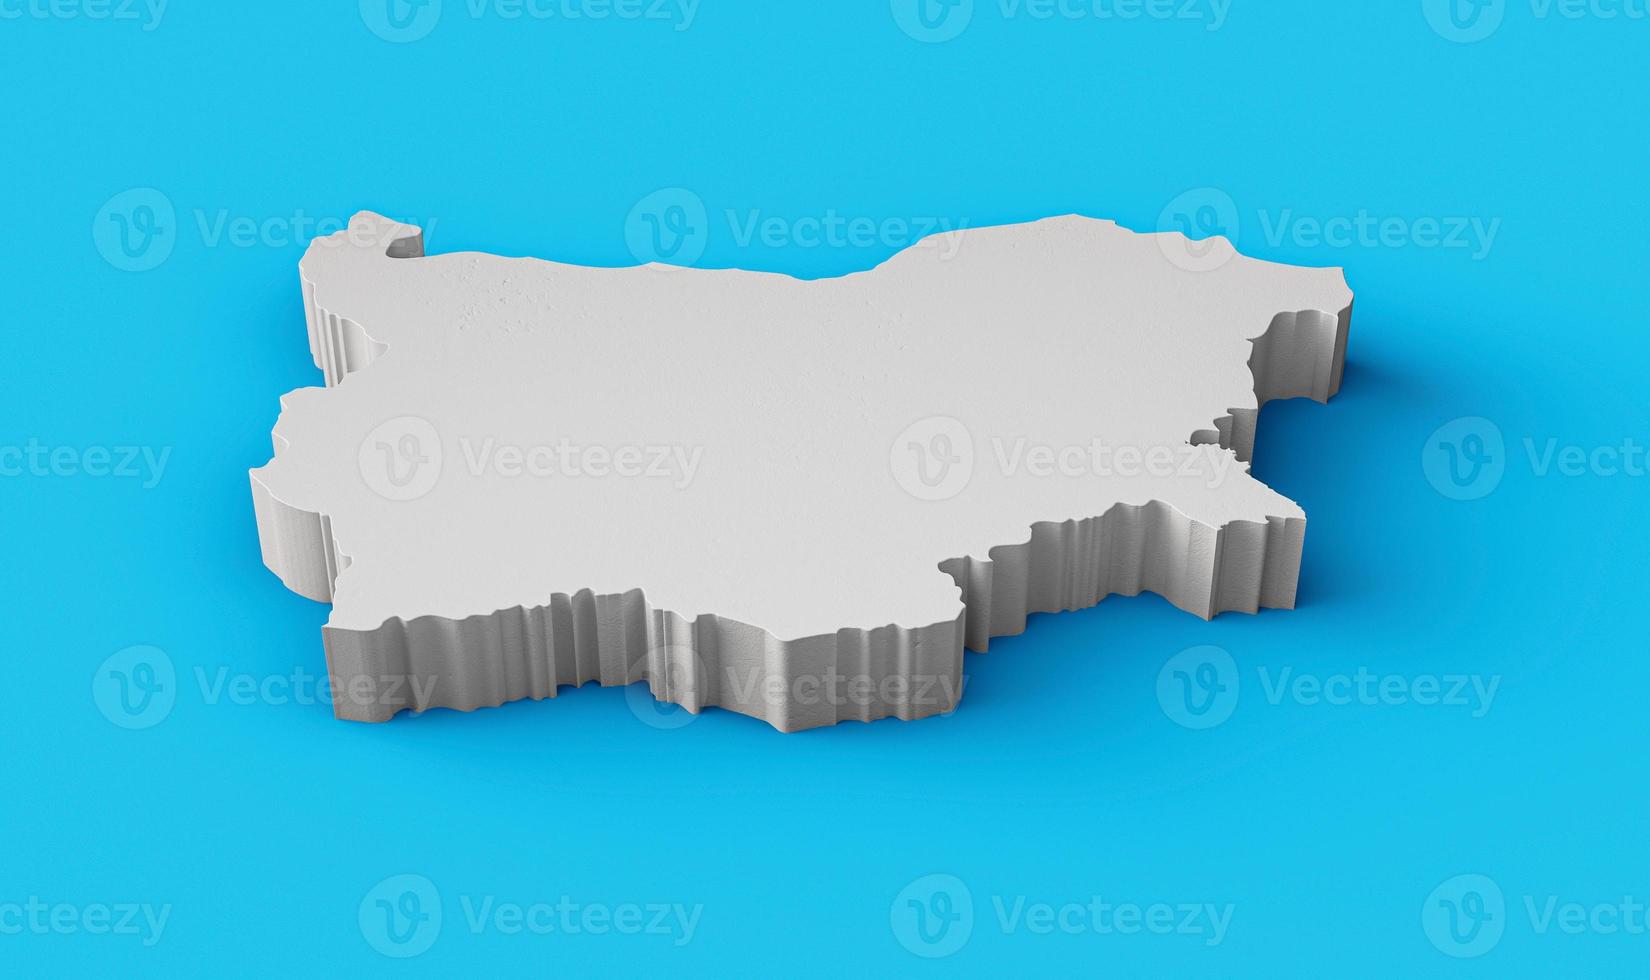 bulgária mapa 3d geografia cartografia e topologia mar superfície azul ilustração 3d foto